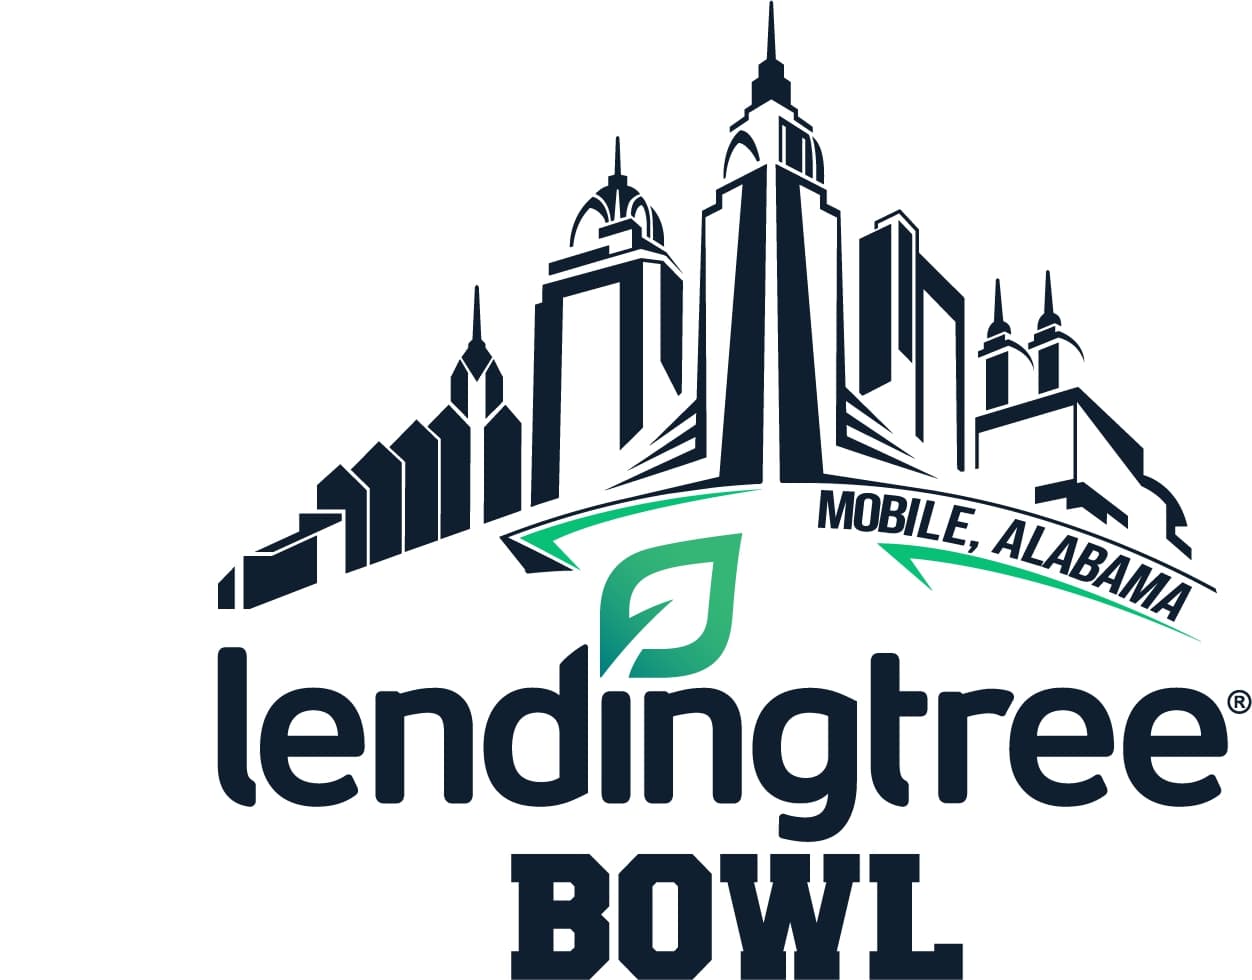 lendingtree bowl